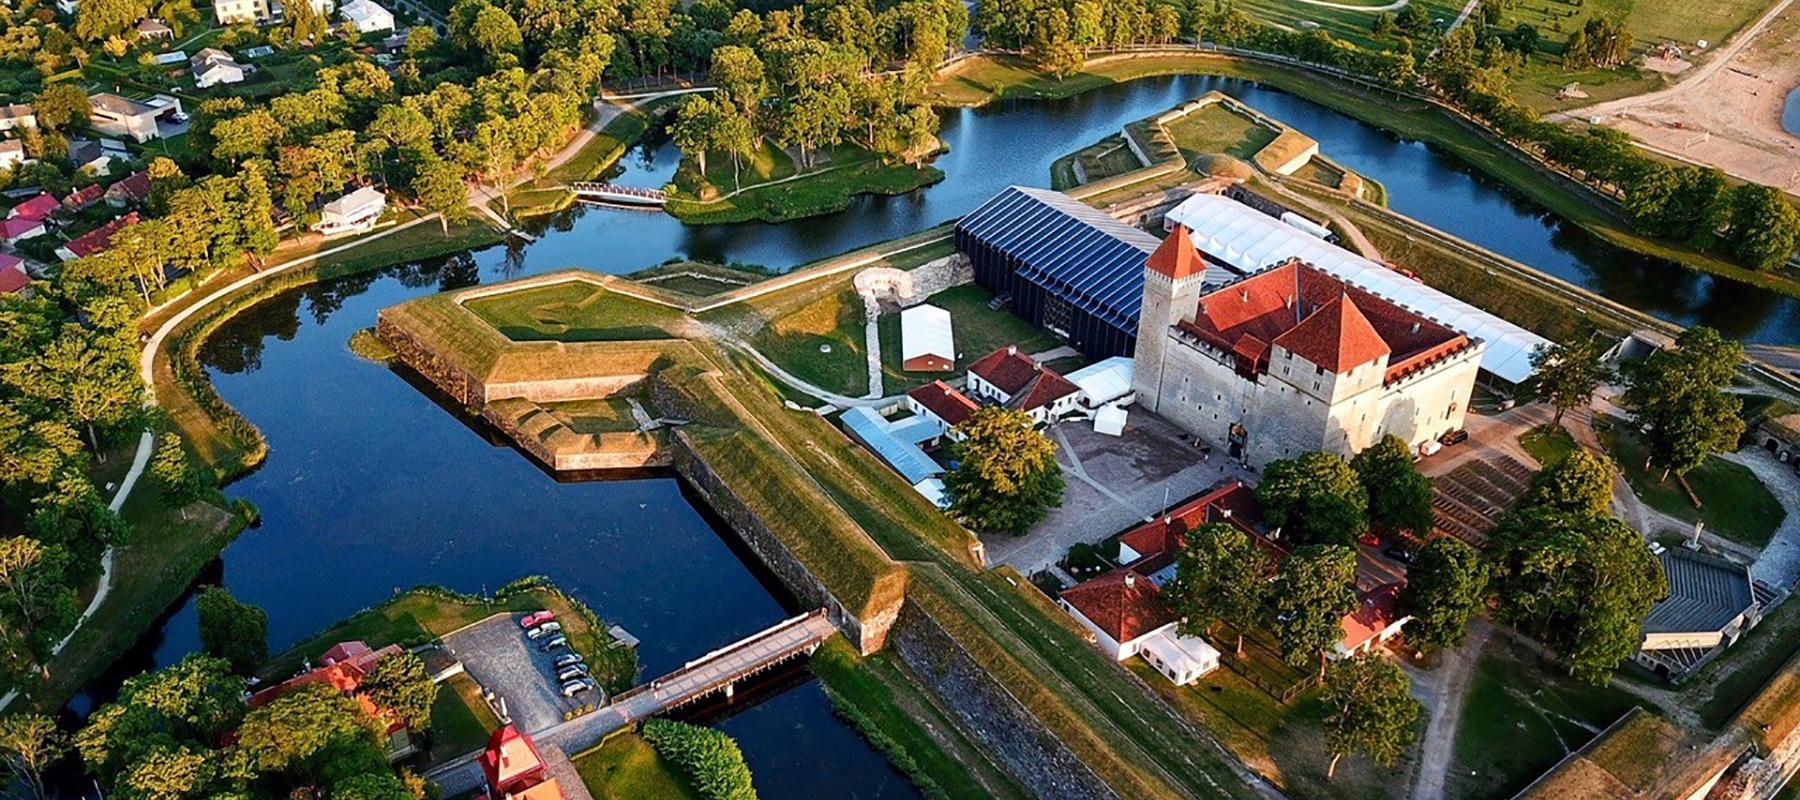 Saarenmaan oopperapäivät ovat Baltian suosituin oopperafestivaali, joka järjestetään keskikesällä Kuressaaren historiallisen piispanlinnan pihalla, jo